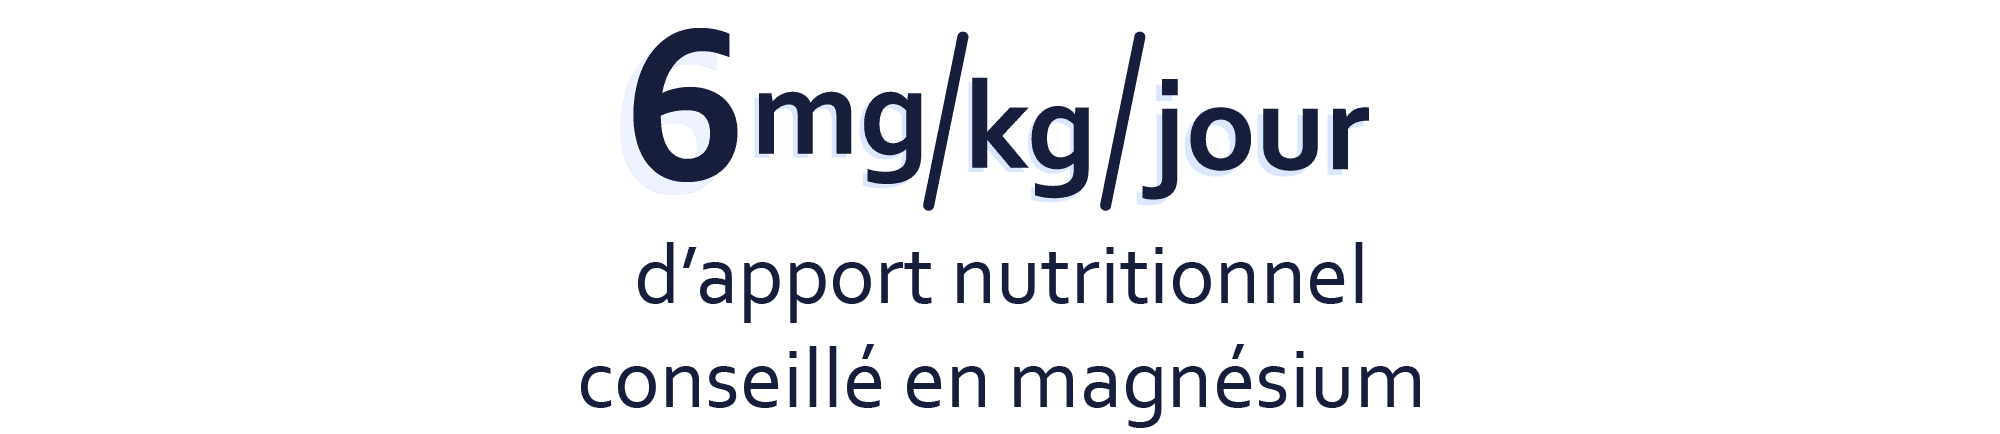 6mg/kg/jour d'apport nutritionnel conseillé en magnésium